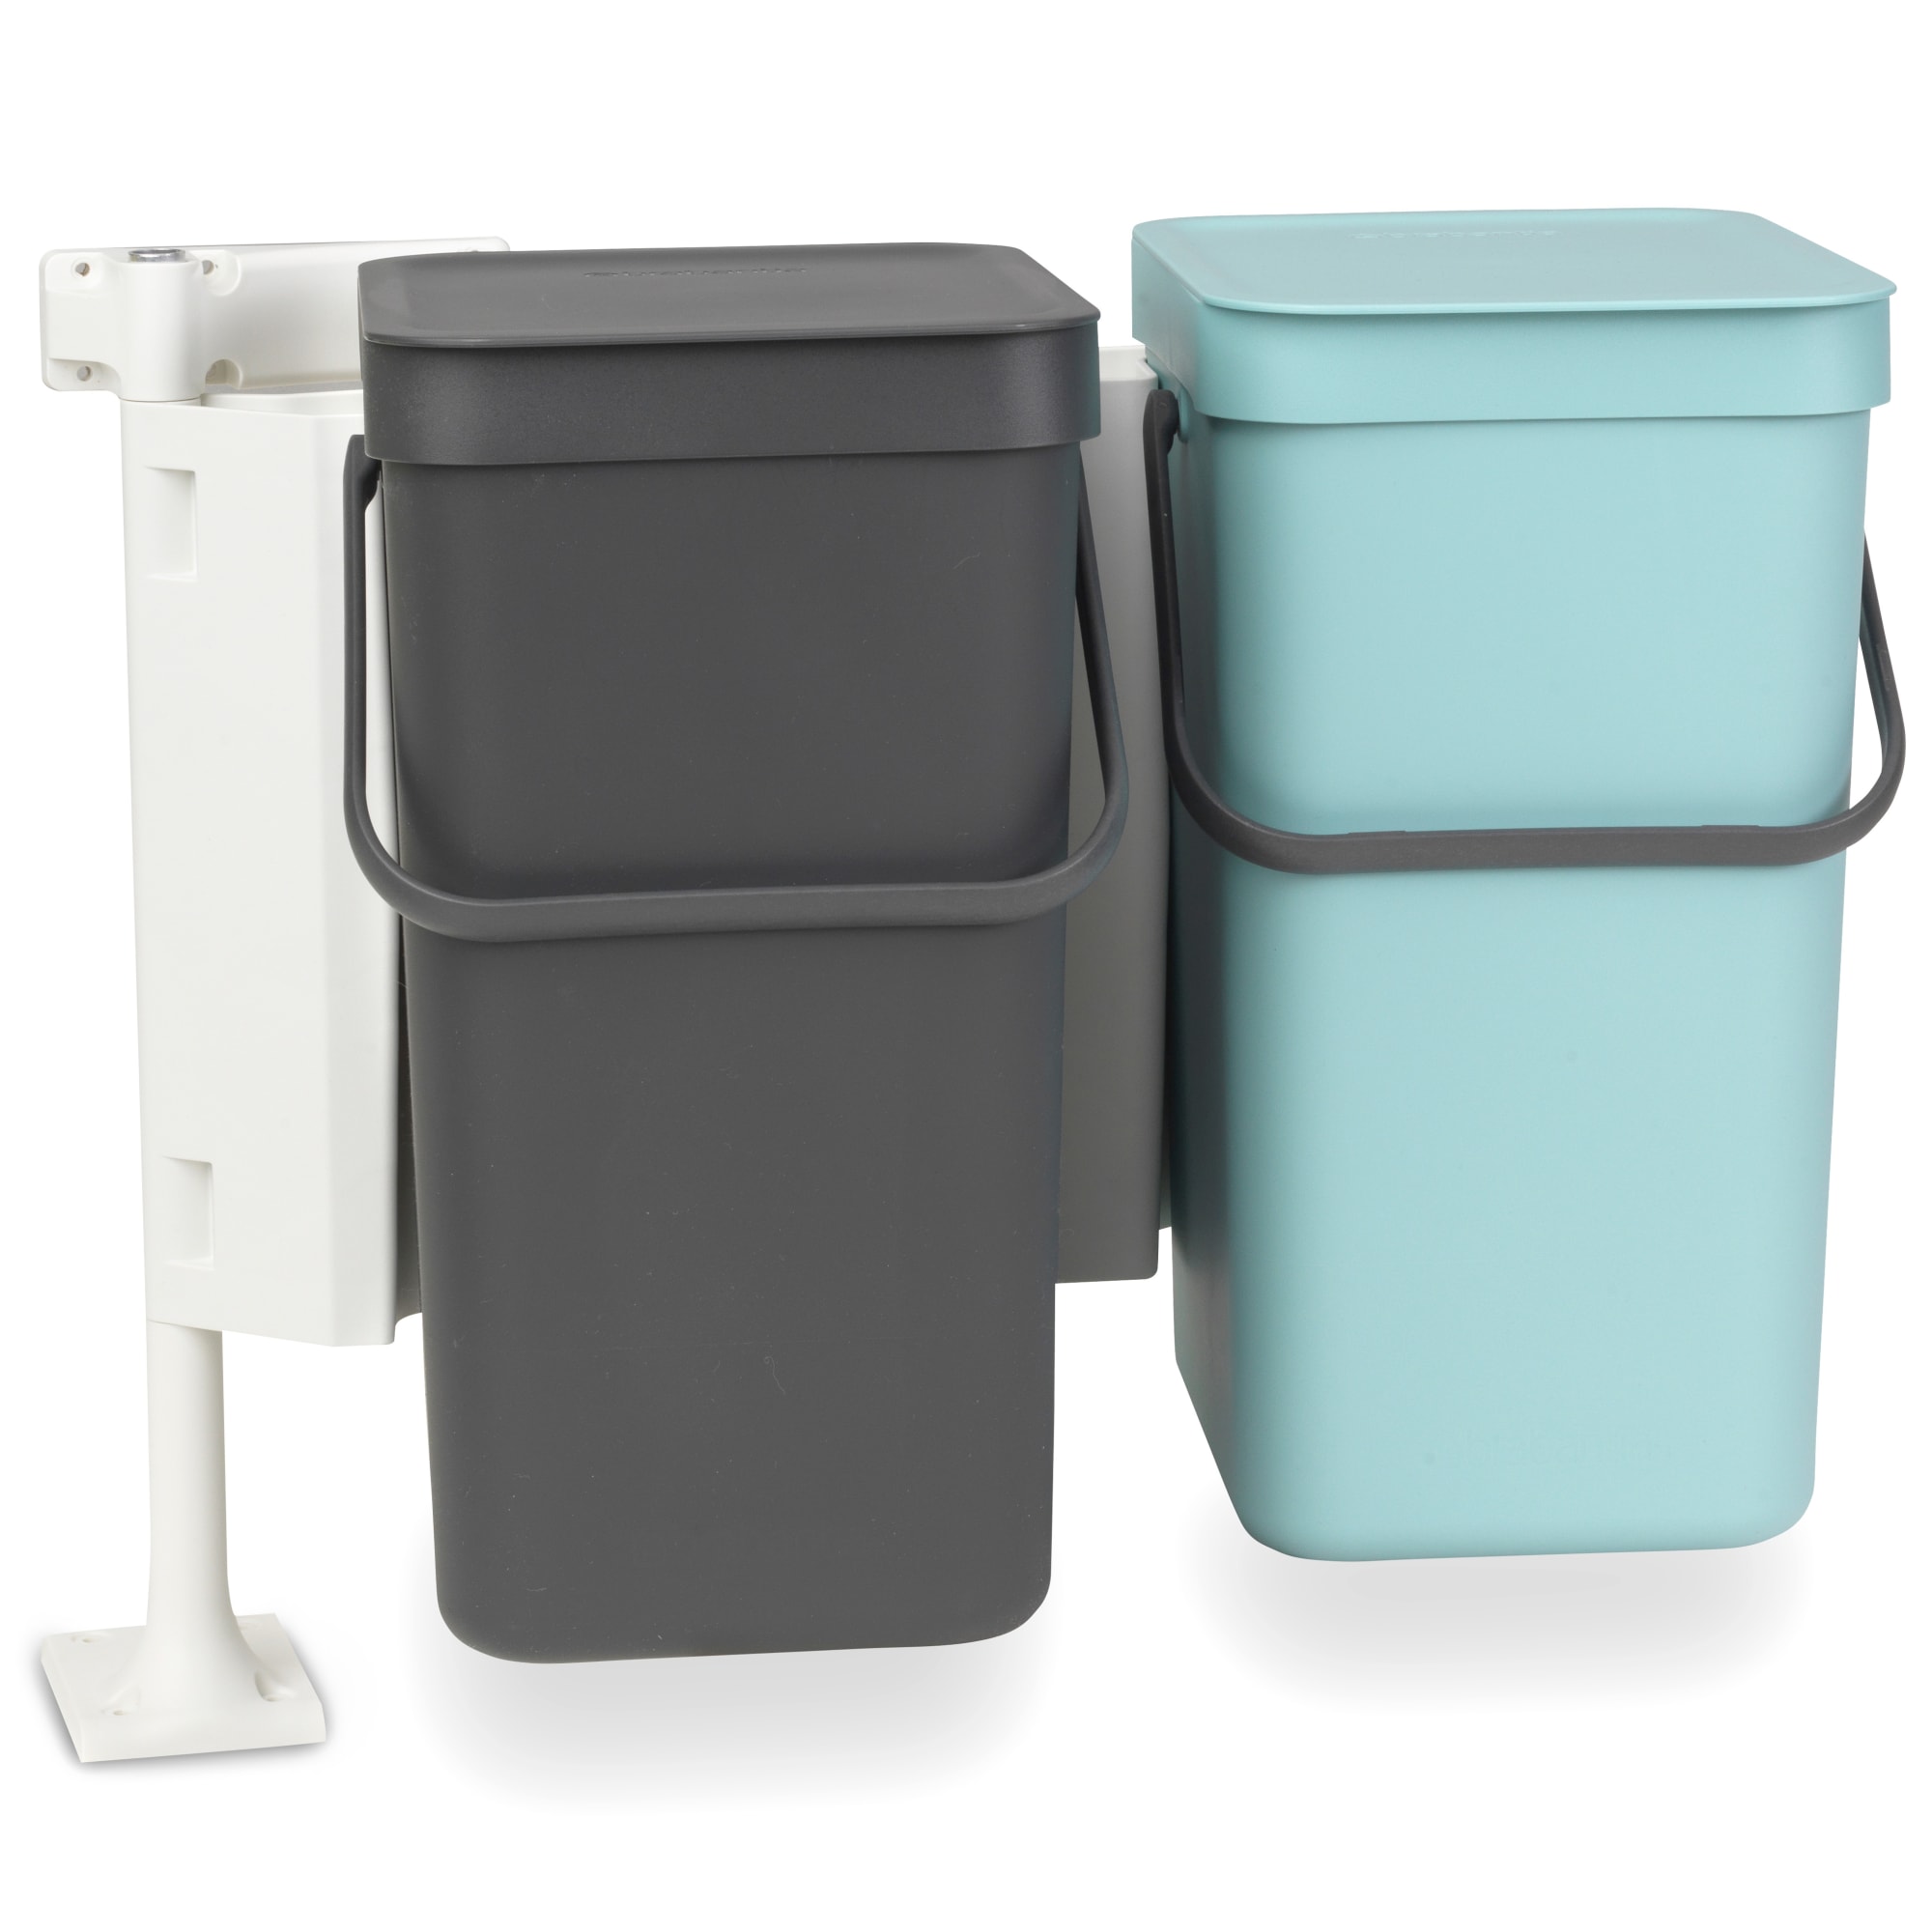 2 x 12 liter - Smart affaldssortering til hjemmet